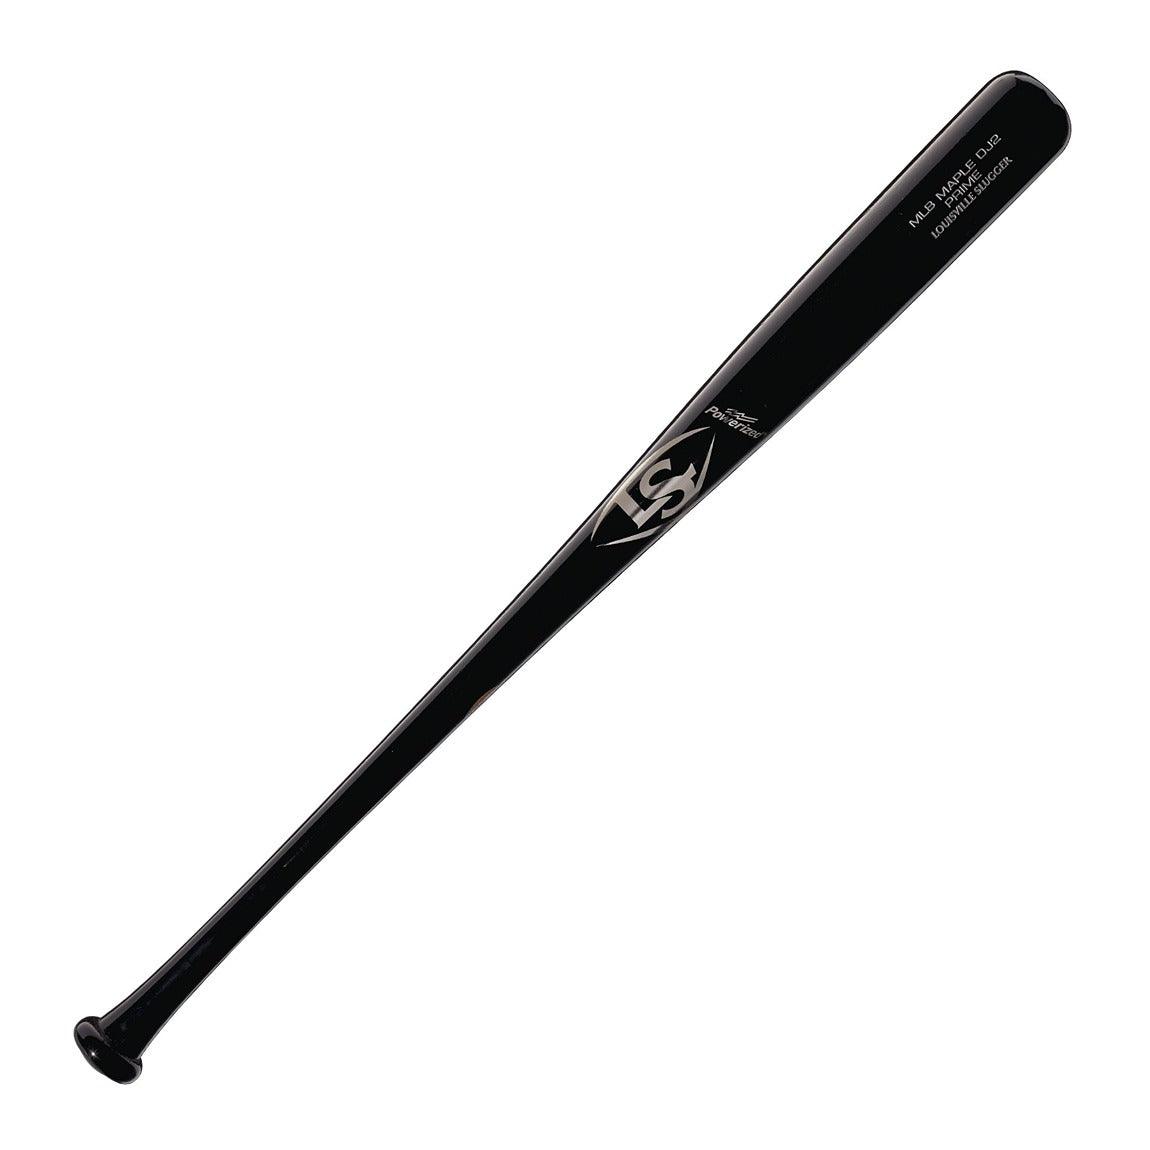 Louisville MLB Prime DJ2 Captain Maple Baseball bat